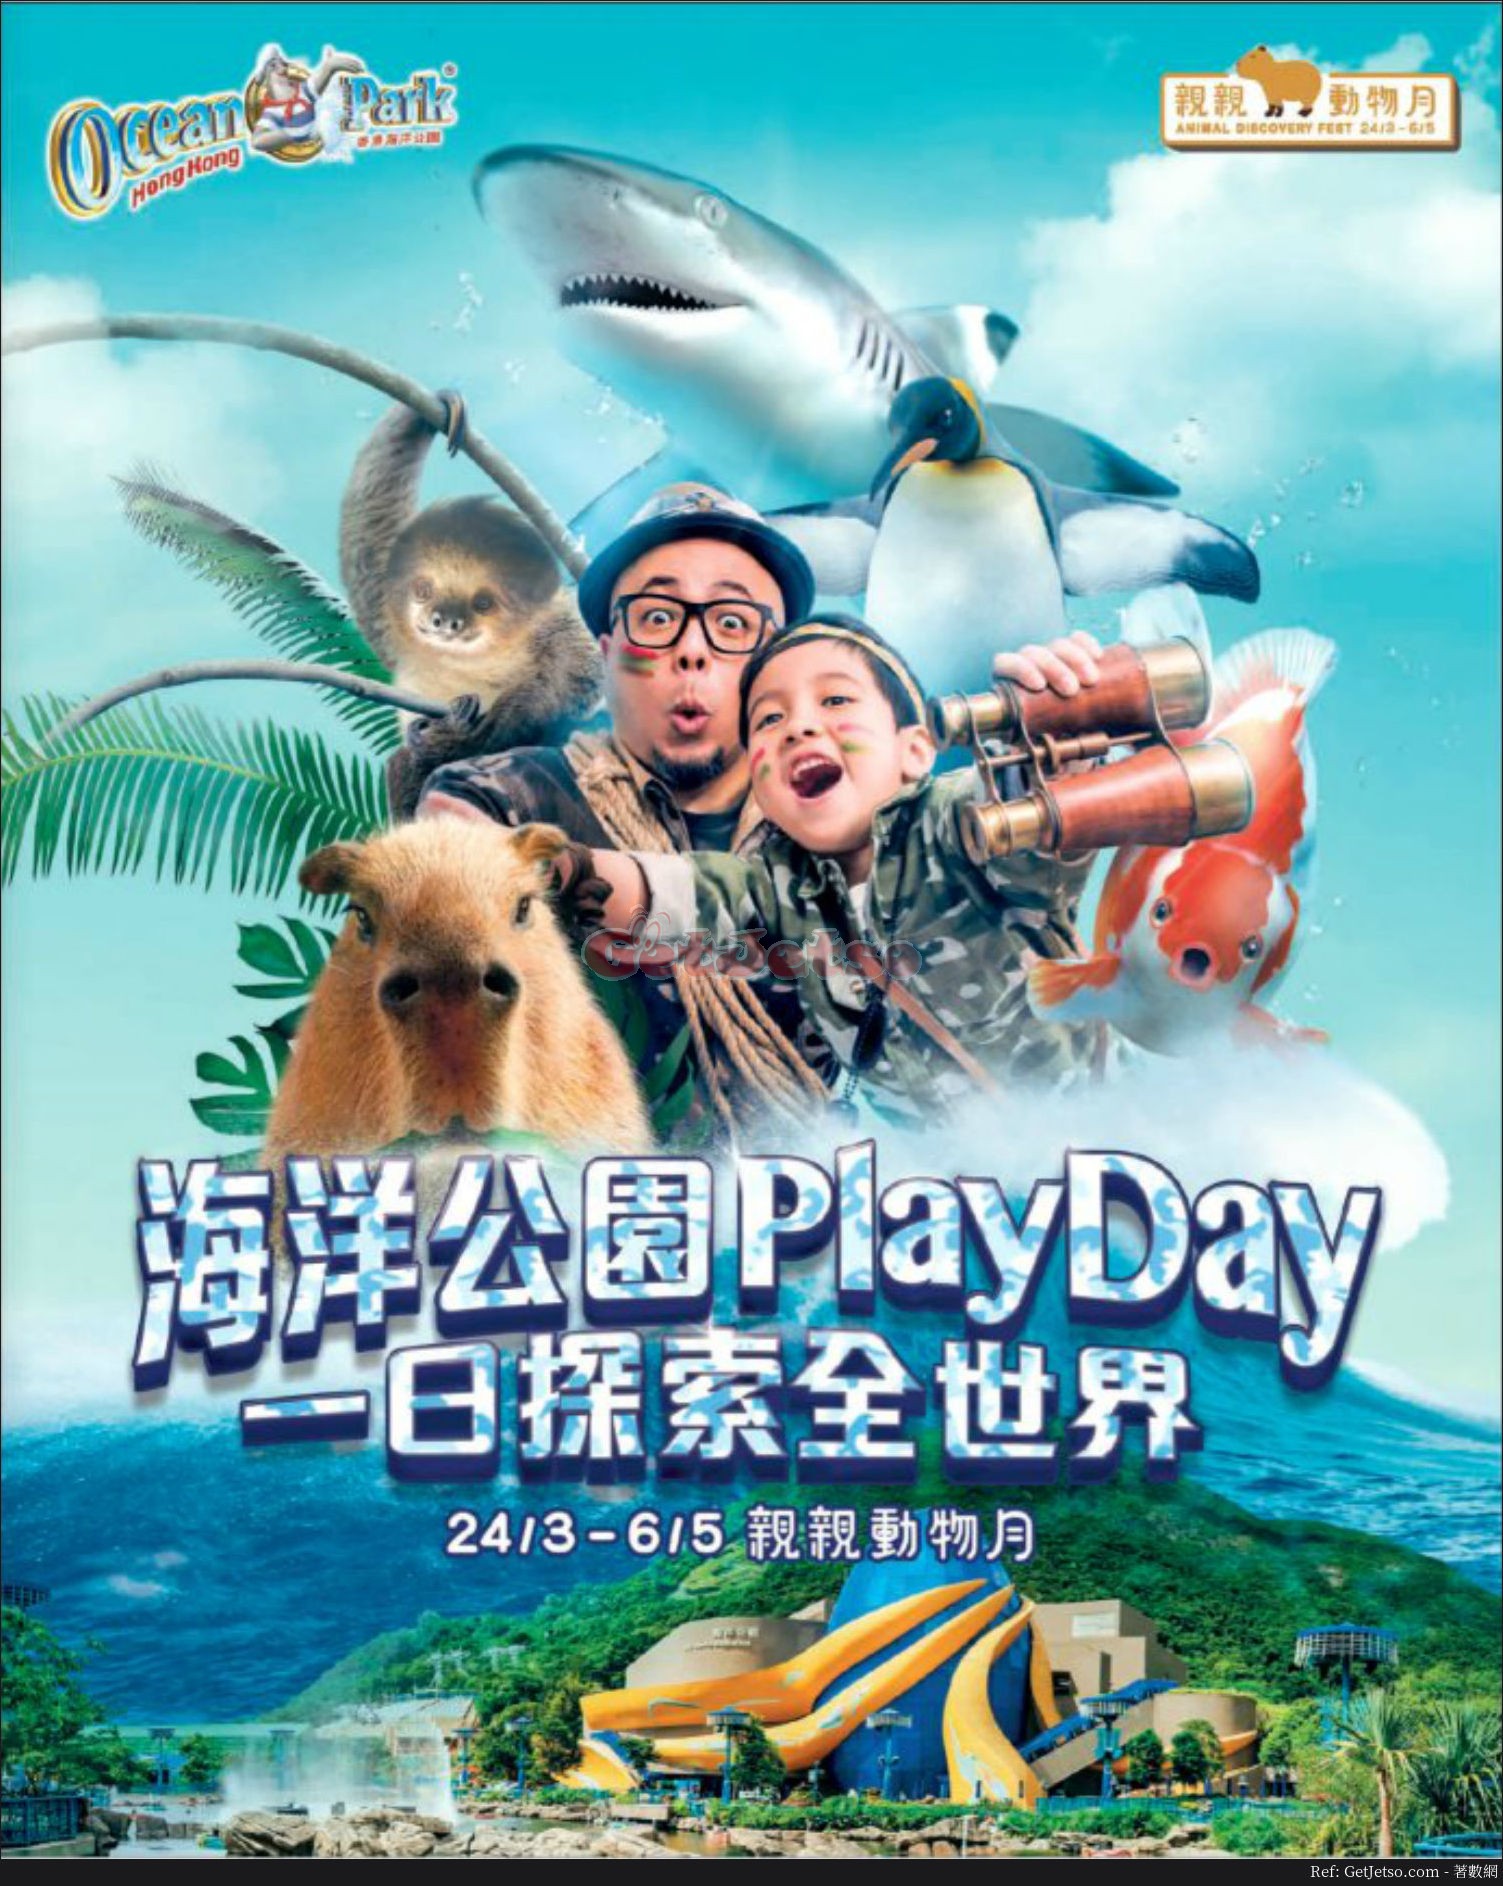 海洋公園香港居民88折門票優惠、親親動物月(至18年5月6日)圖片1